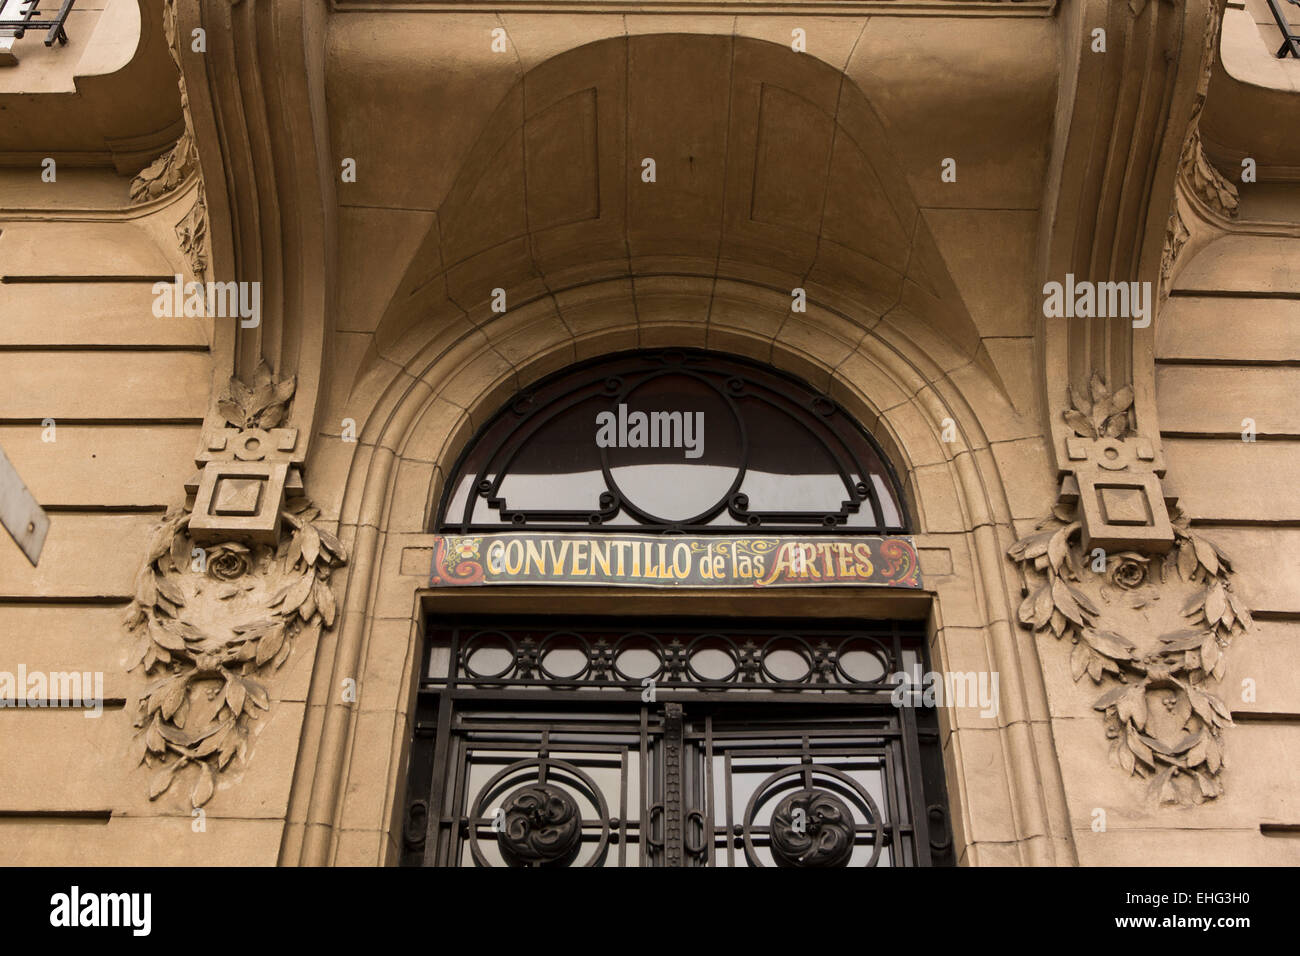 Argentina, Buenos Aires, Libertad, Conventillo de las artes belle epoque doorway Stock Photo